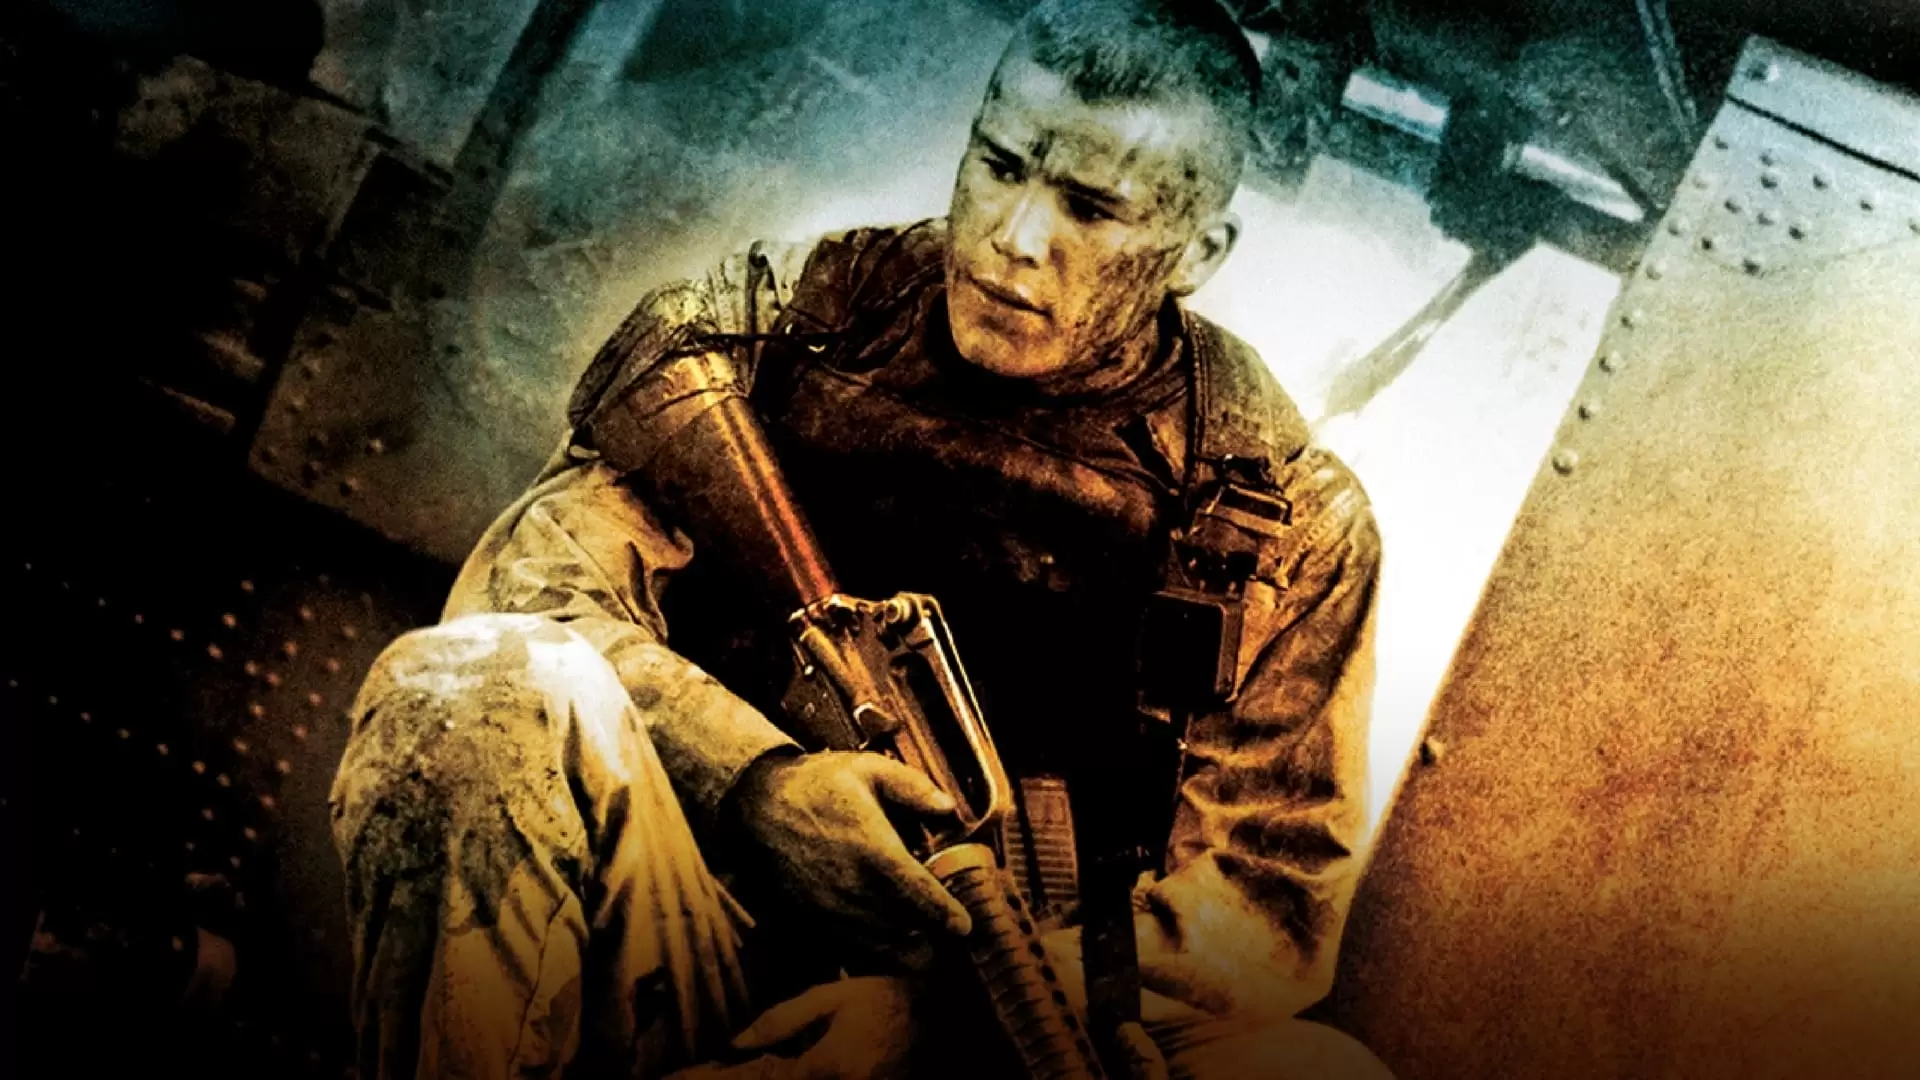 دانلود فیلم Black Hawk Down 2001 (سقوط شاهین سیاه) با زیرنویس فارسی و تماشای آنلاین